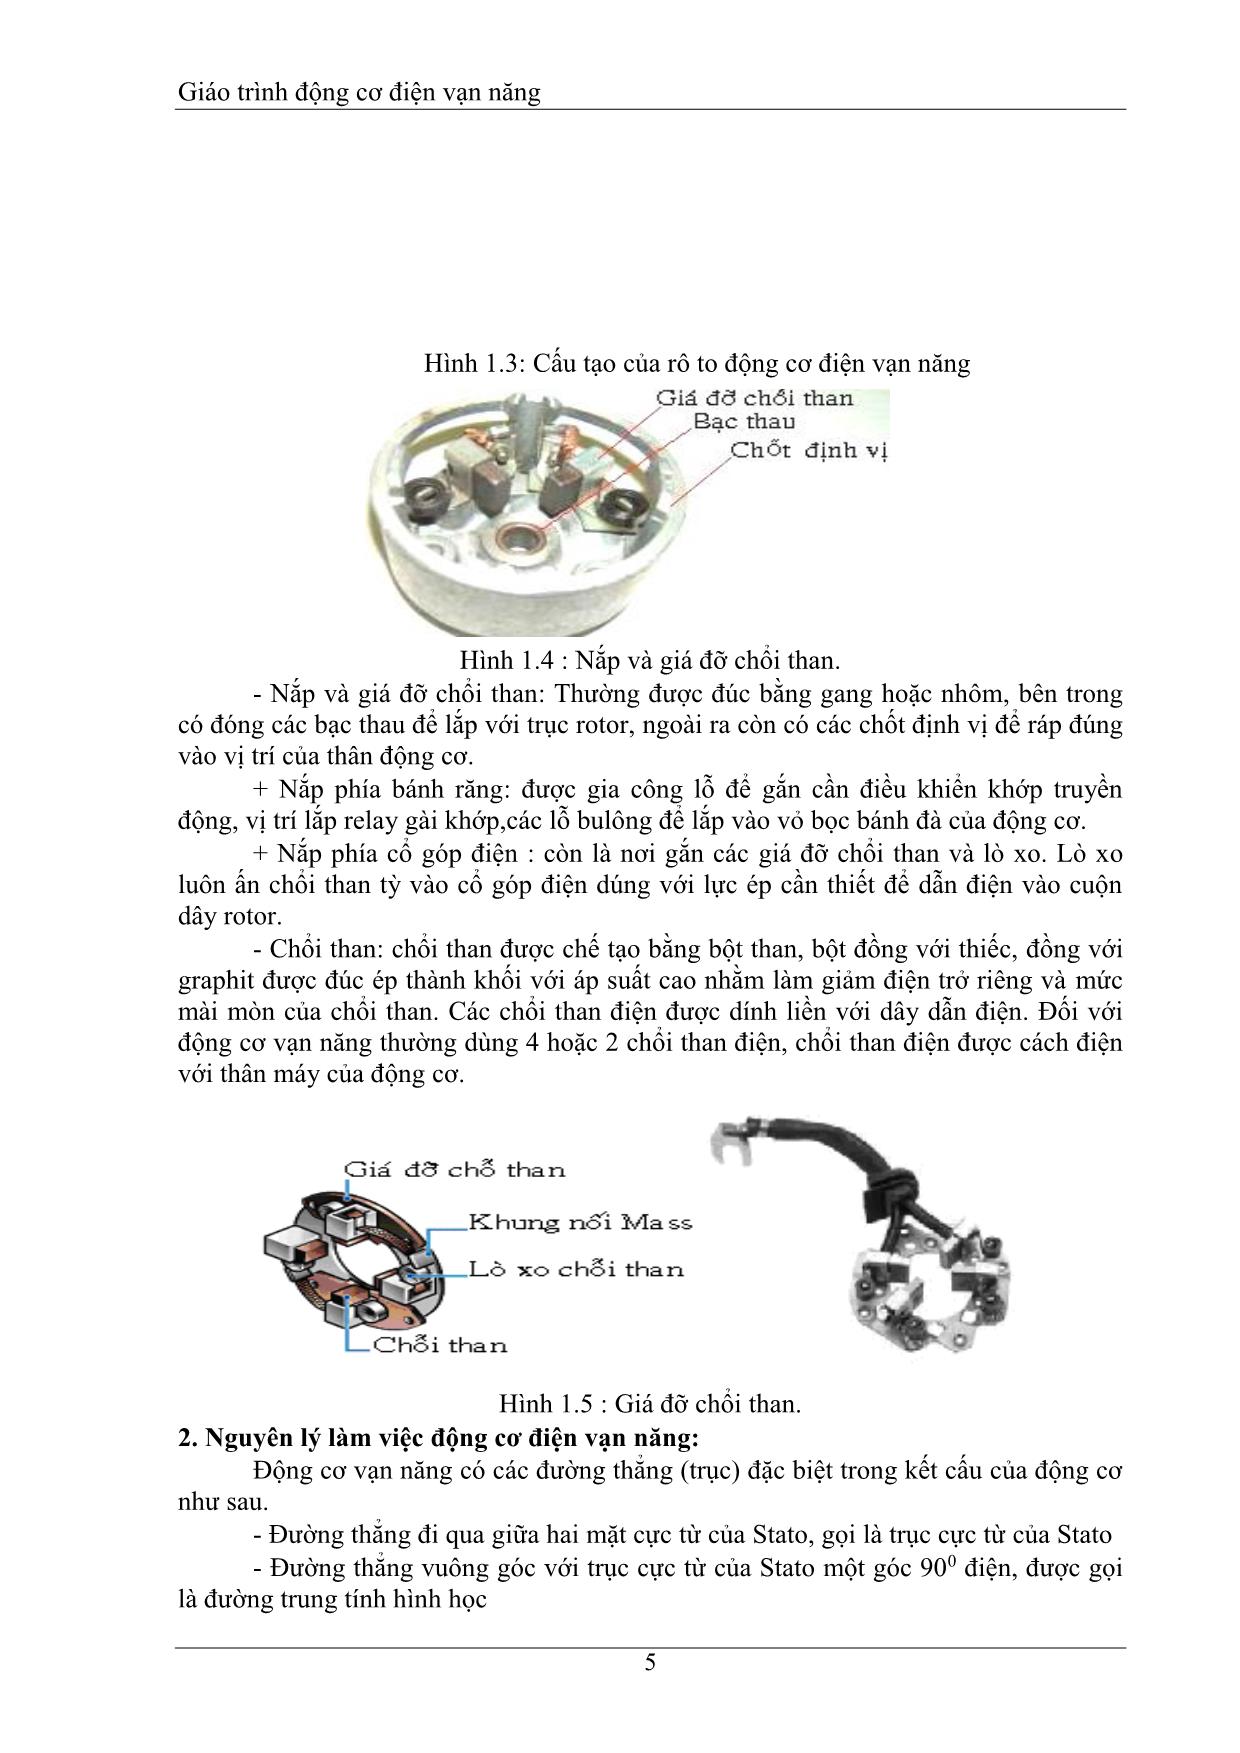 Giáo trình Động cơ điện vạn năng trang 5